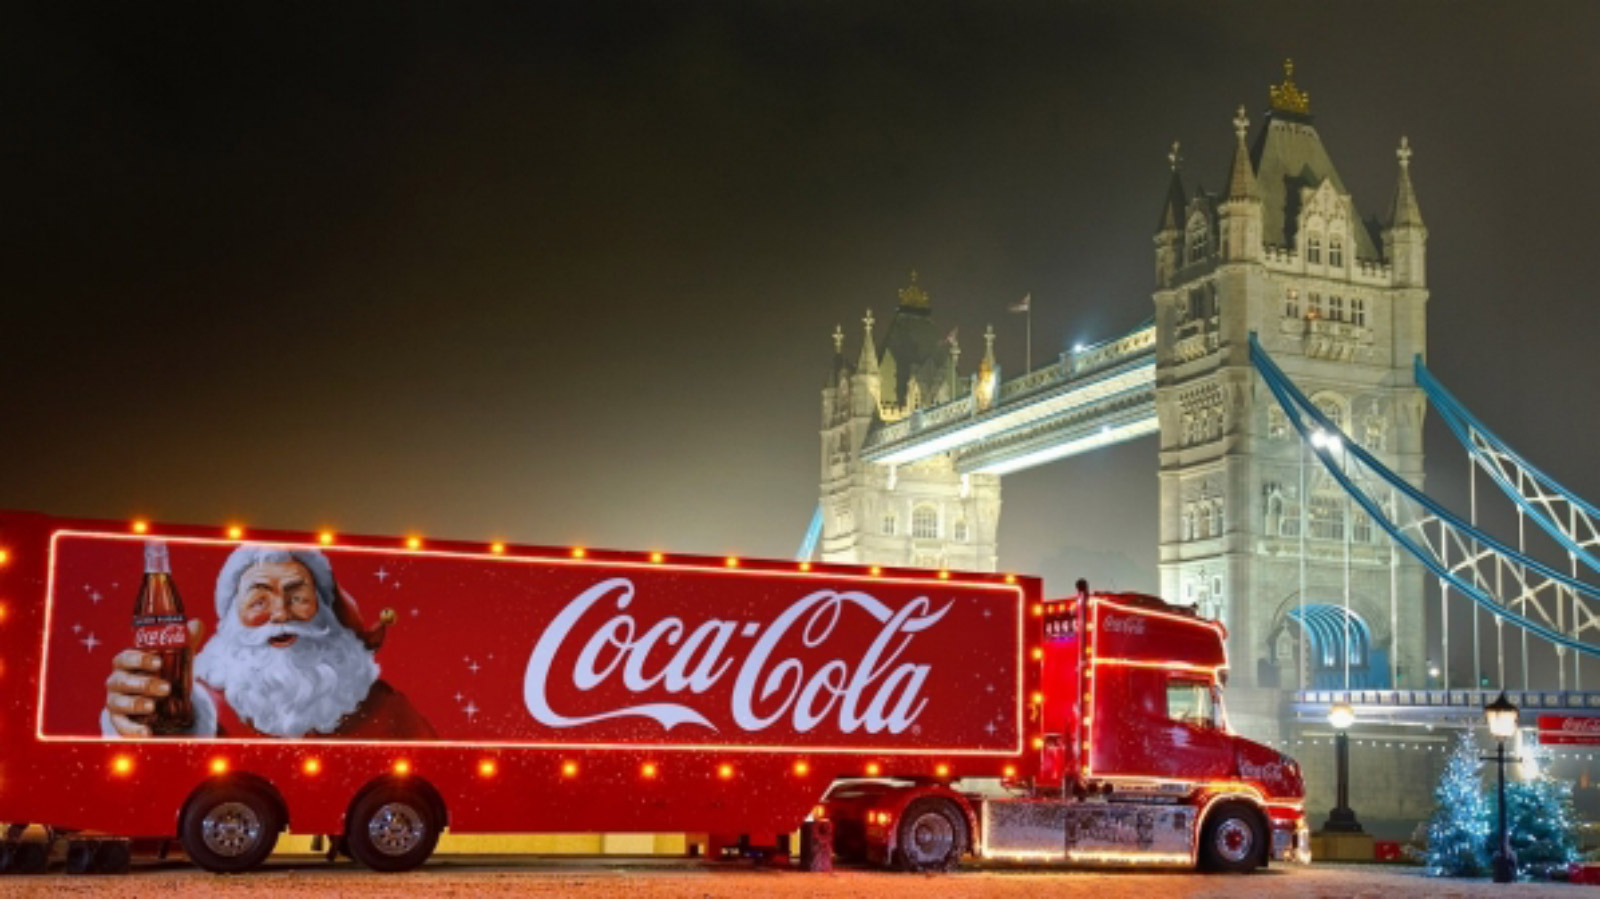 Ciężarówka COCA-COLI ruszyła - święta w reklamie oficjalnie rozpoczęte Coca-Cola mediarun coca cola ciezarowka 2019